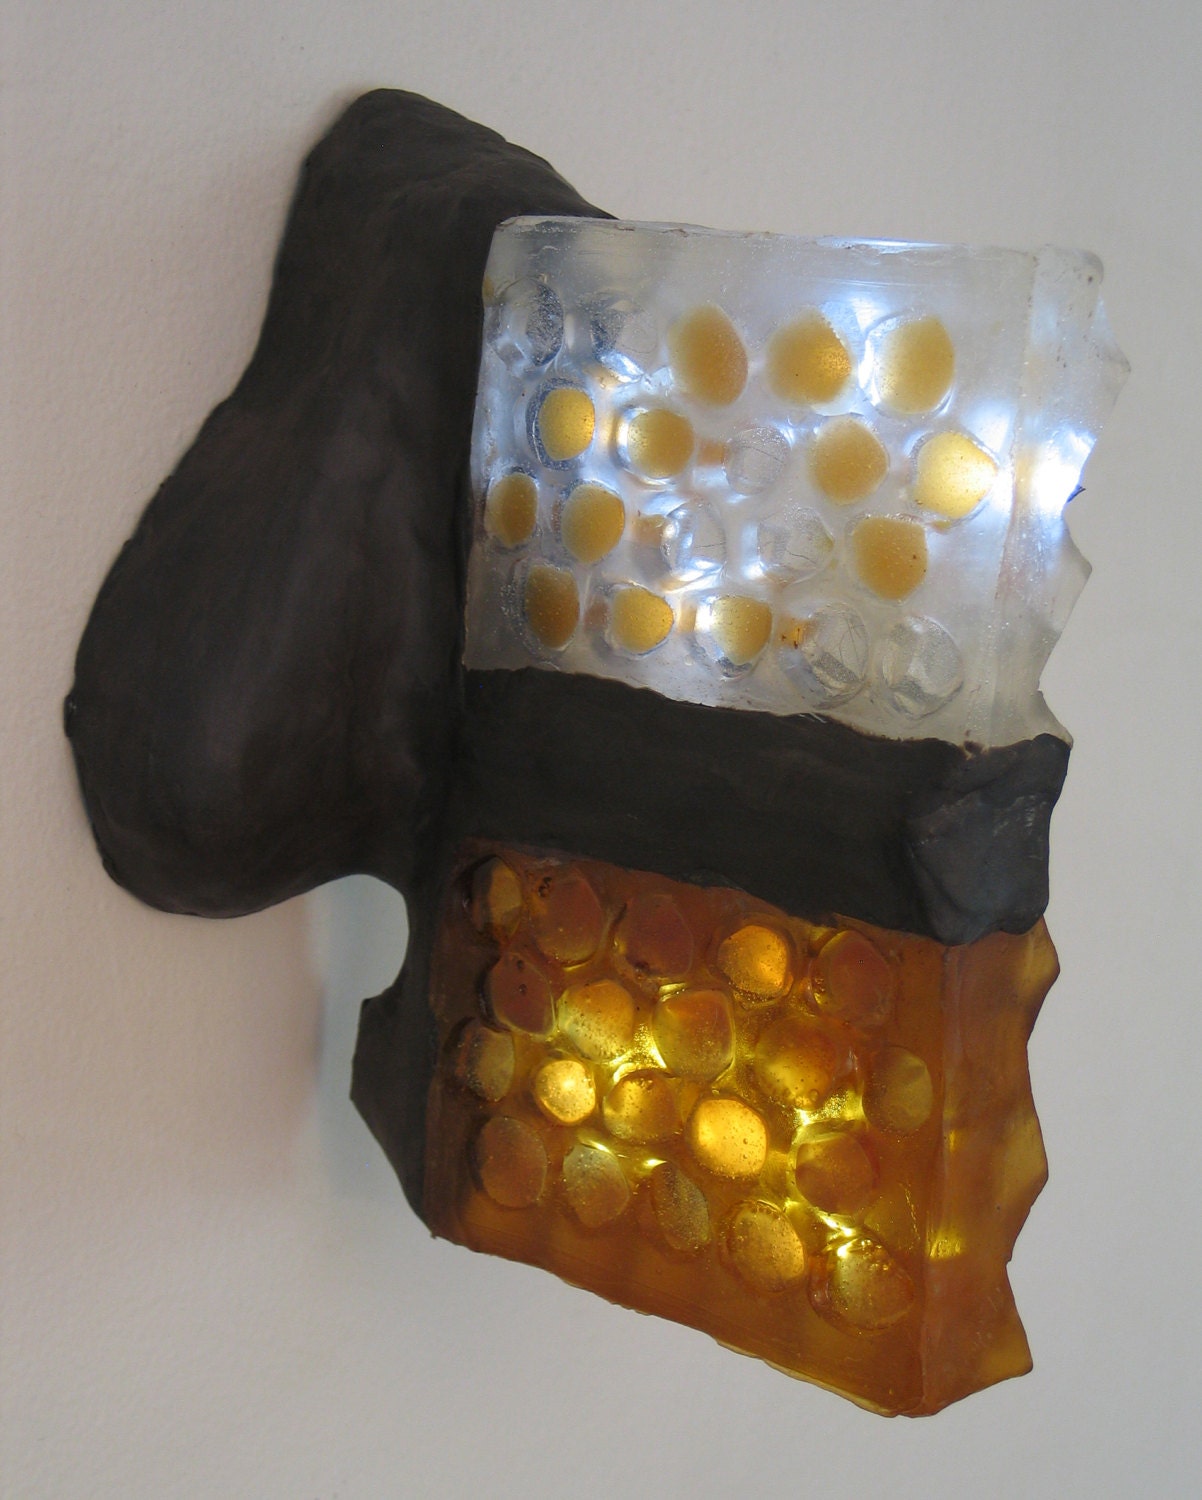 Translucent amber honeycomb with embedded LEDs .  Apis habilis:  Honeycomb Number 6